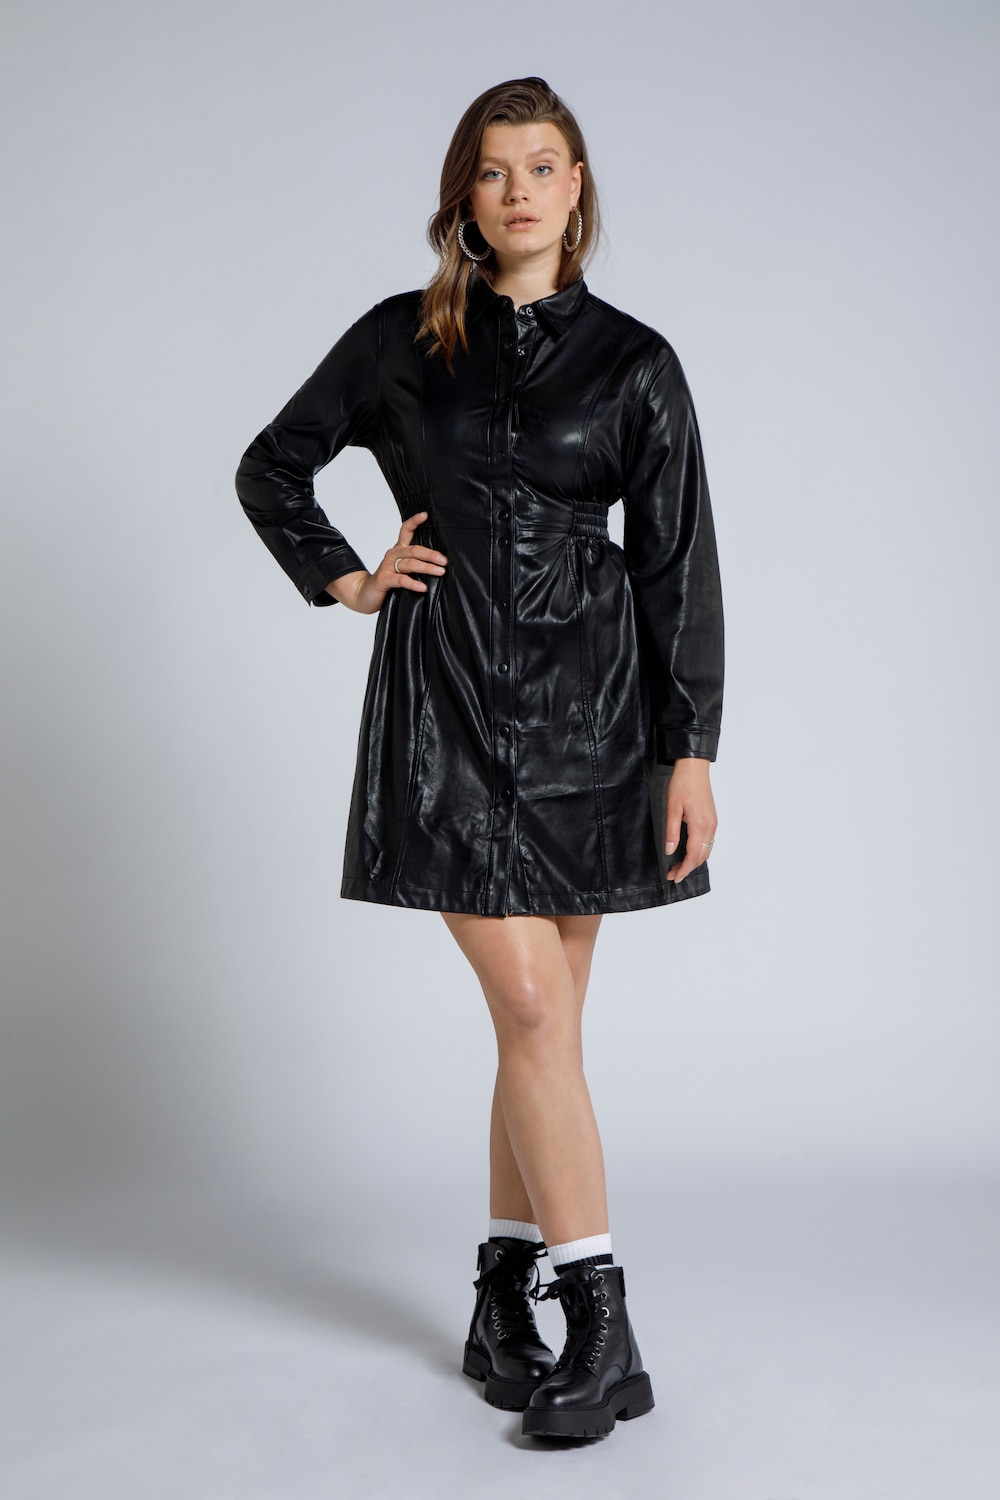 Image of Grosse Grössen Lederoptik Kleid, Damen, schwarz, Größe: 54/56, Synthetische Fasern, Studio Untold